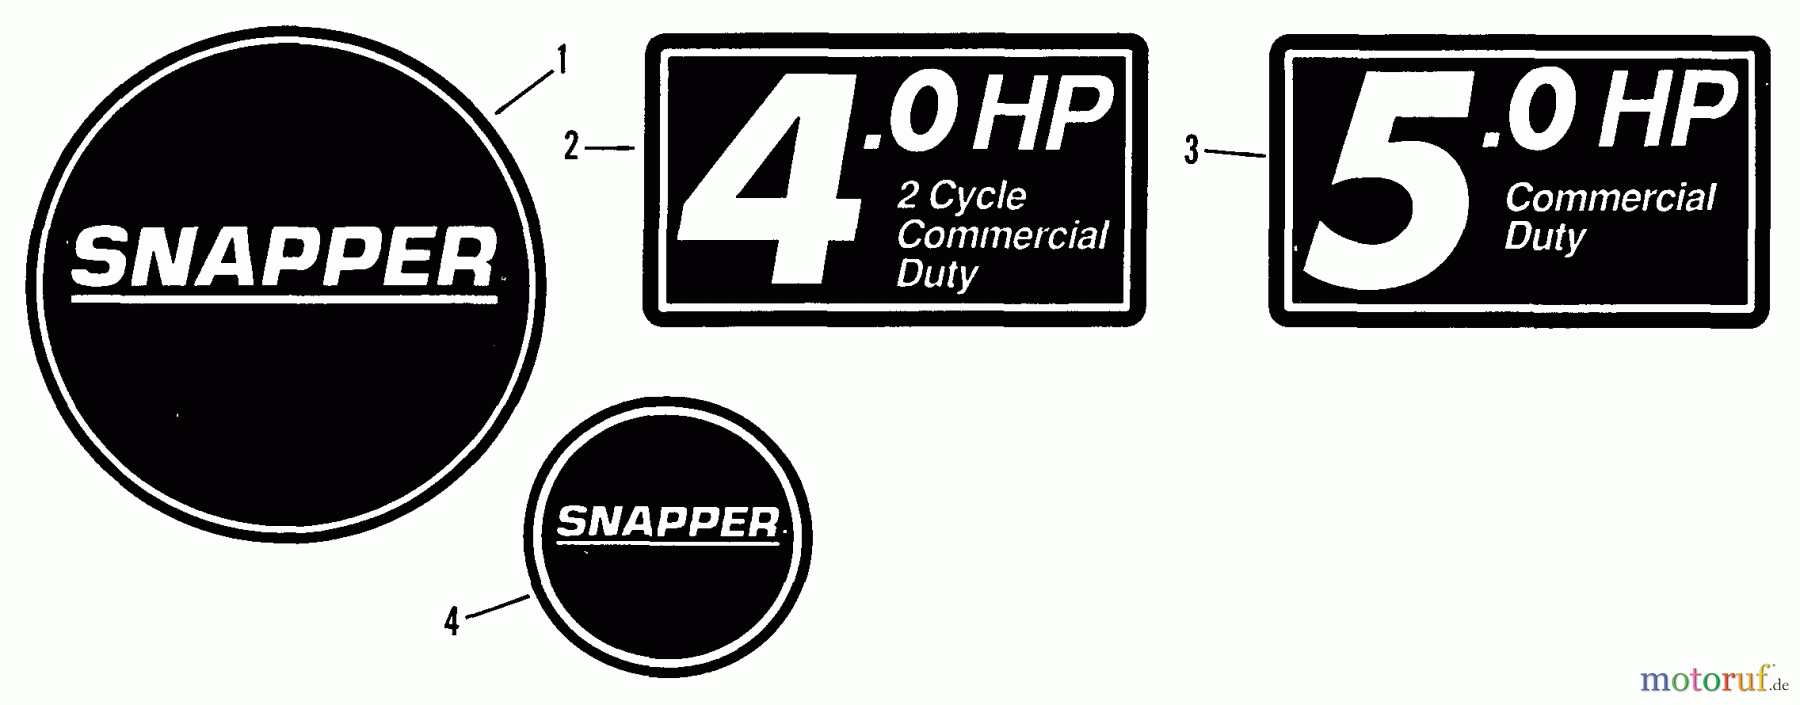  Snapper Rasenmäher PC21507BV - Snapper 21